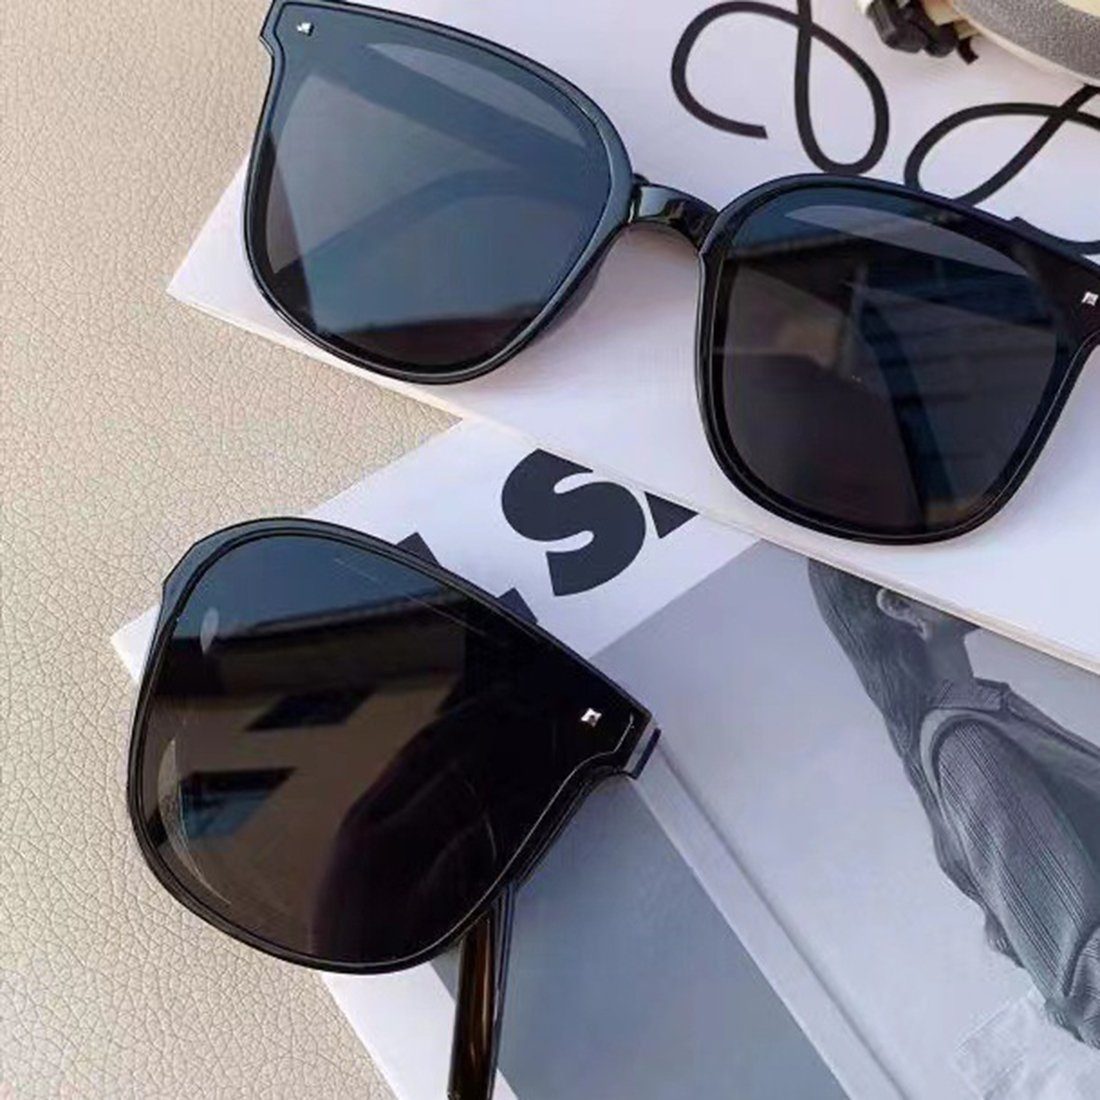 Haiaveng Sonnenbrille Sonnenbrillen, Sonnenbrillen mit Aufbewahrungstasche) UV-Schutz Faltbare Sonnenbrille (mit black